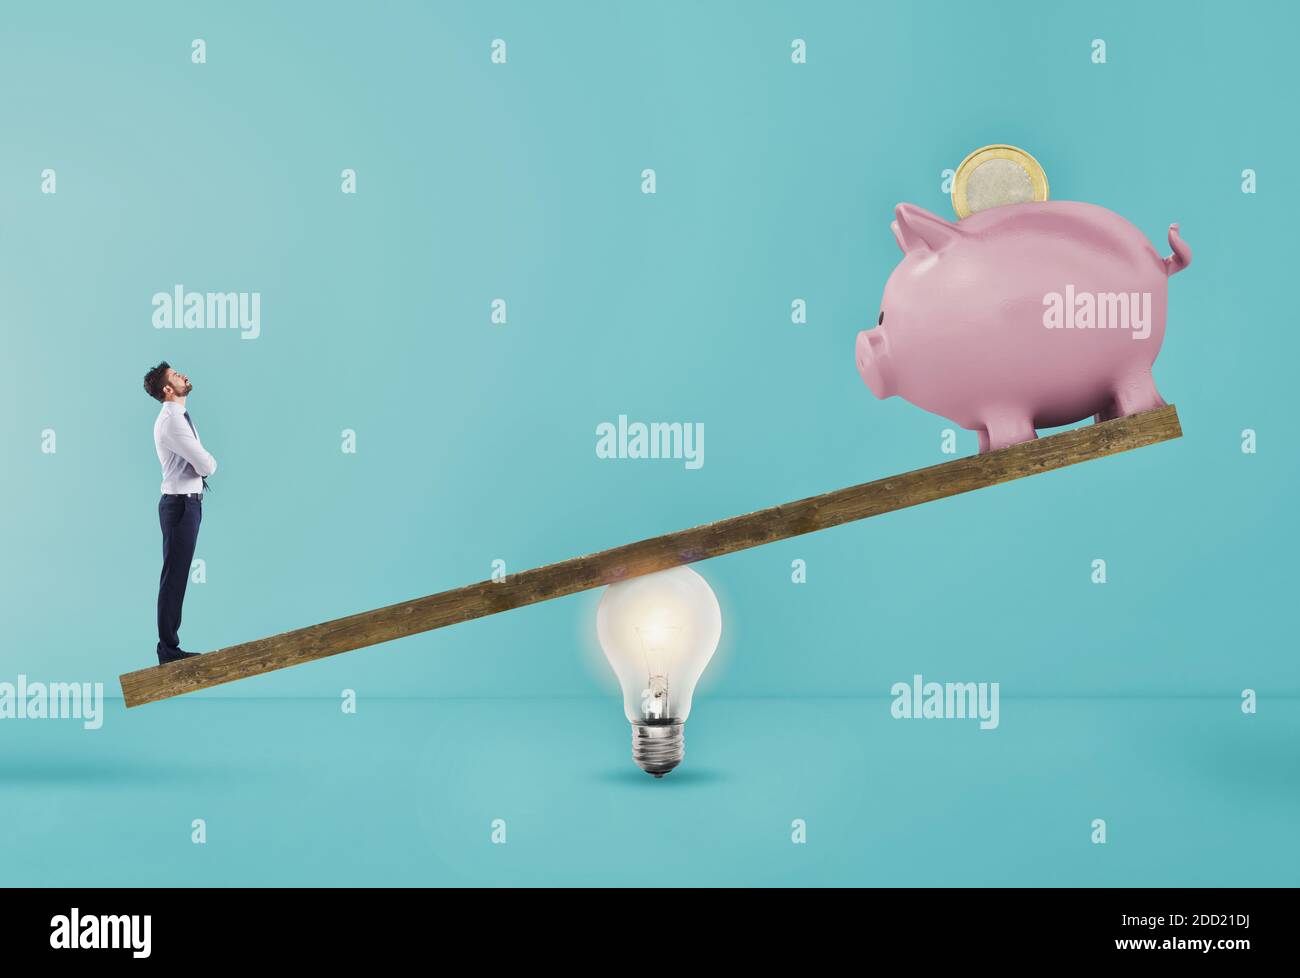 Geschäftsmann nutzt Glühbirne Ad-Hebel, um Sparschwein zu heben. Konzept des einfachen Einkommens mit einer guten Idee. Cyanfarbener Hintergrund Stockfoto